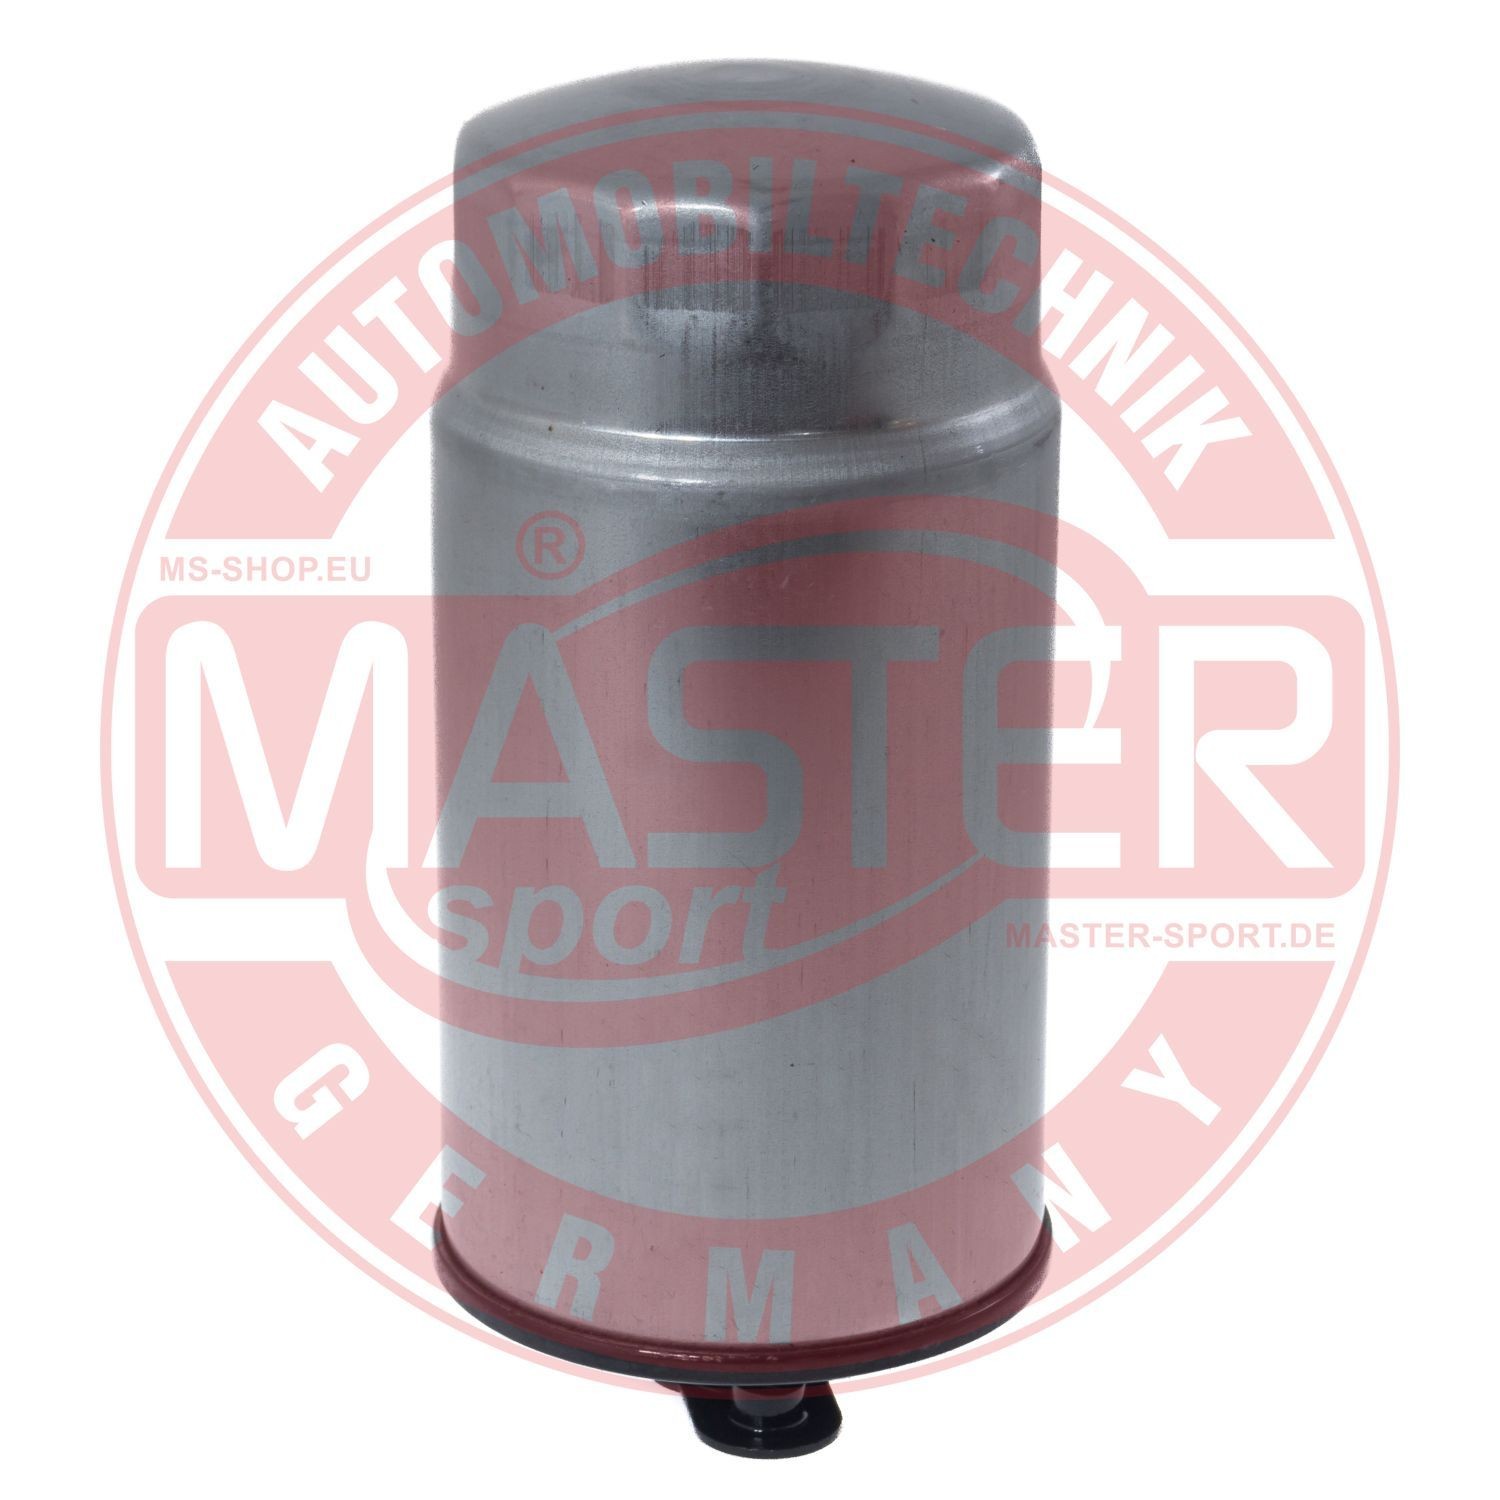 430084110 MASTER-SPORT 841/1-KF-PCS-MS Fuel filter 0813 030